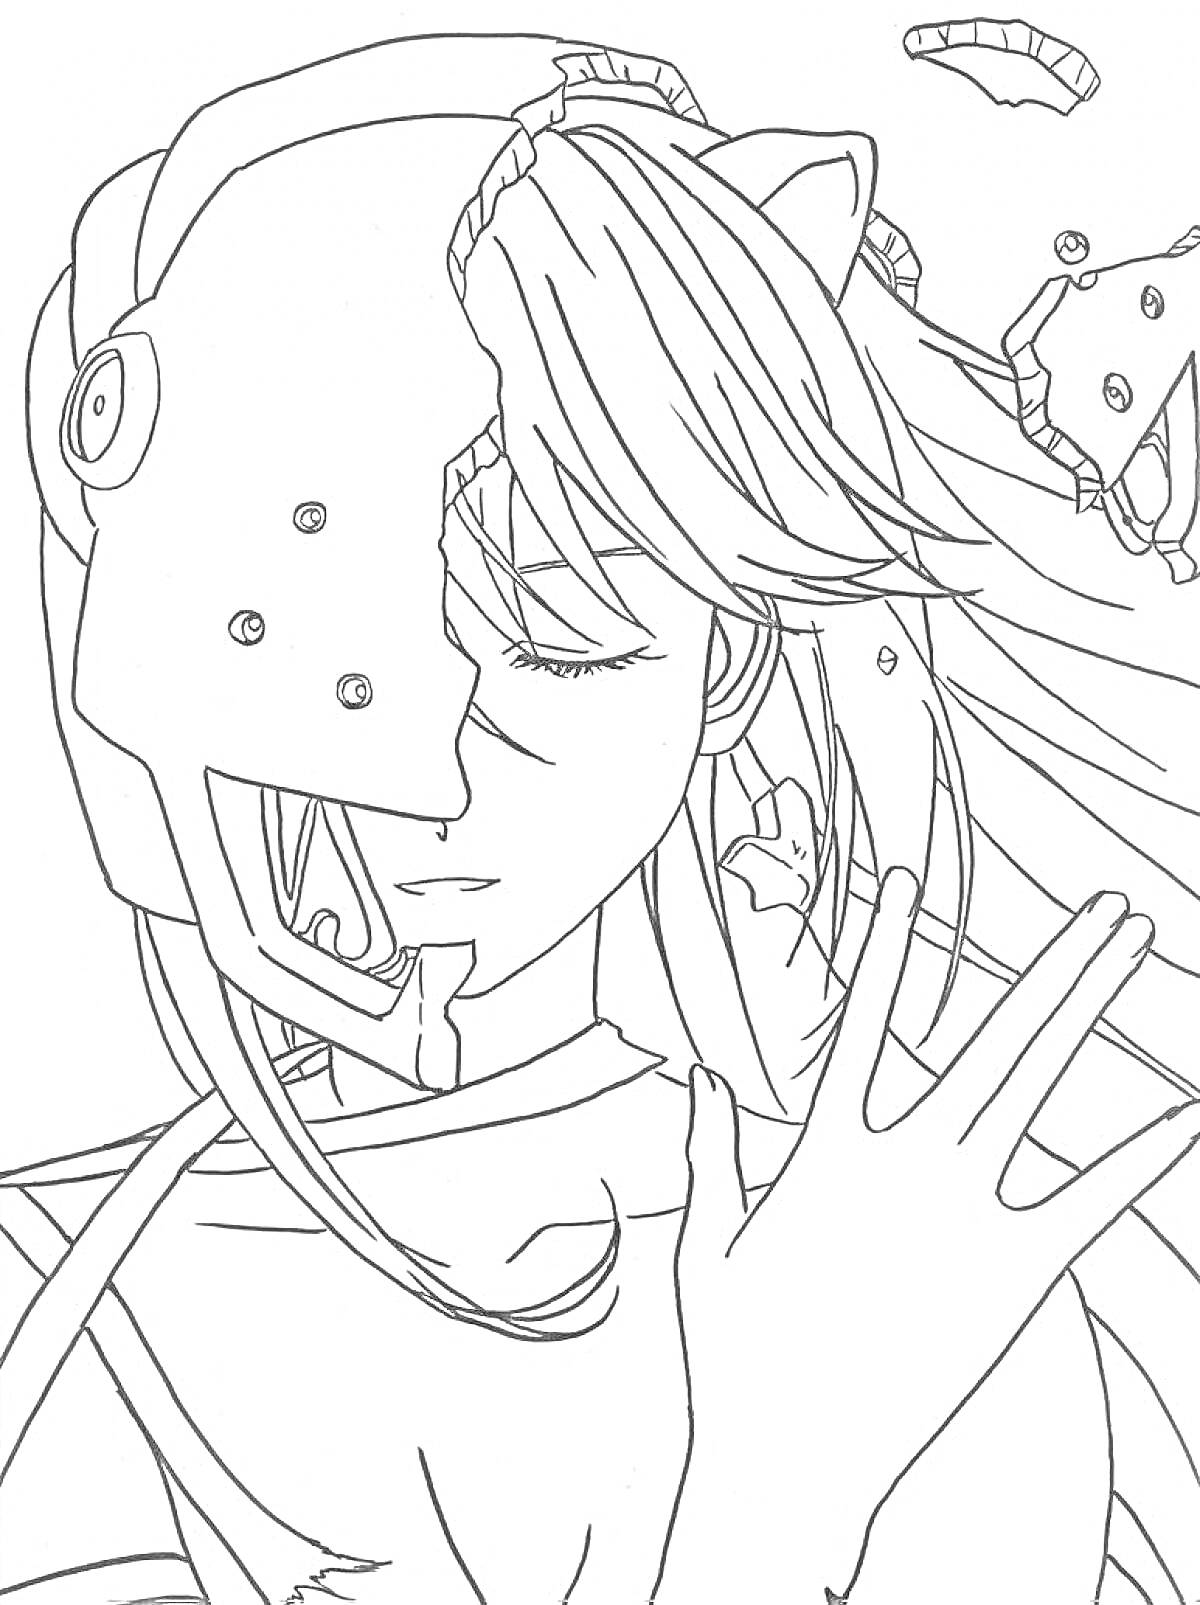 Раскраска Аниме фигурка с частично разрушенным шлемом и закрытыми глазами